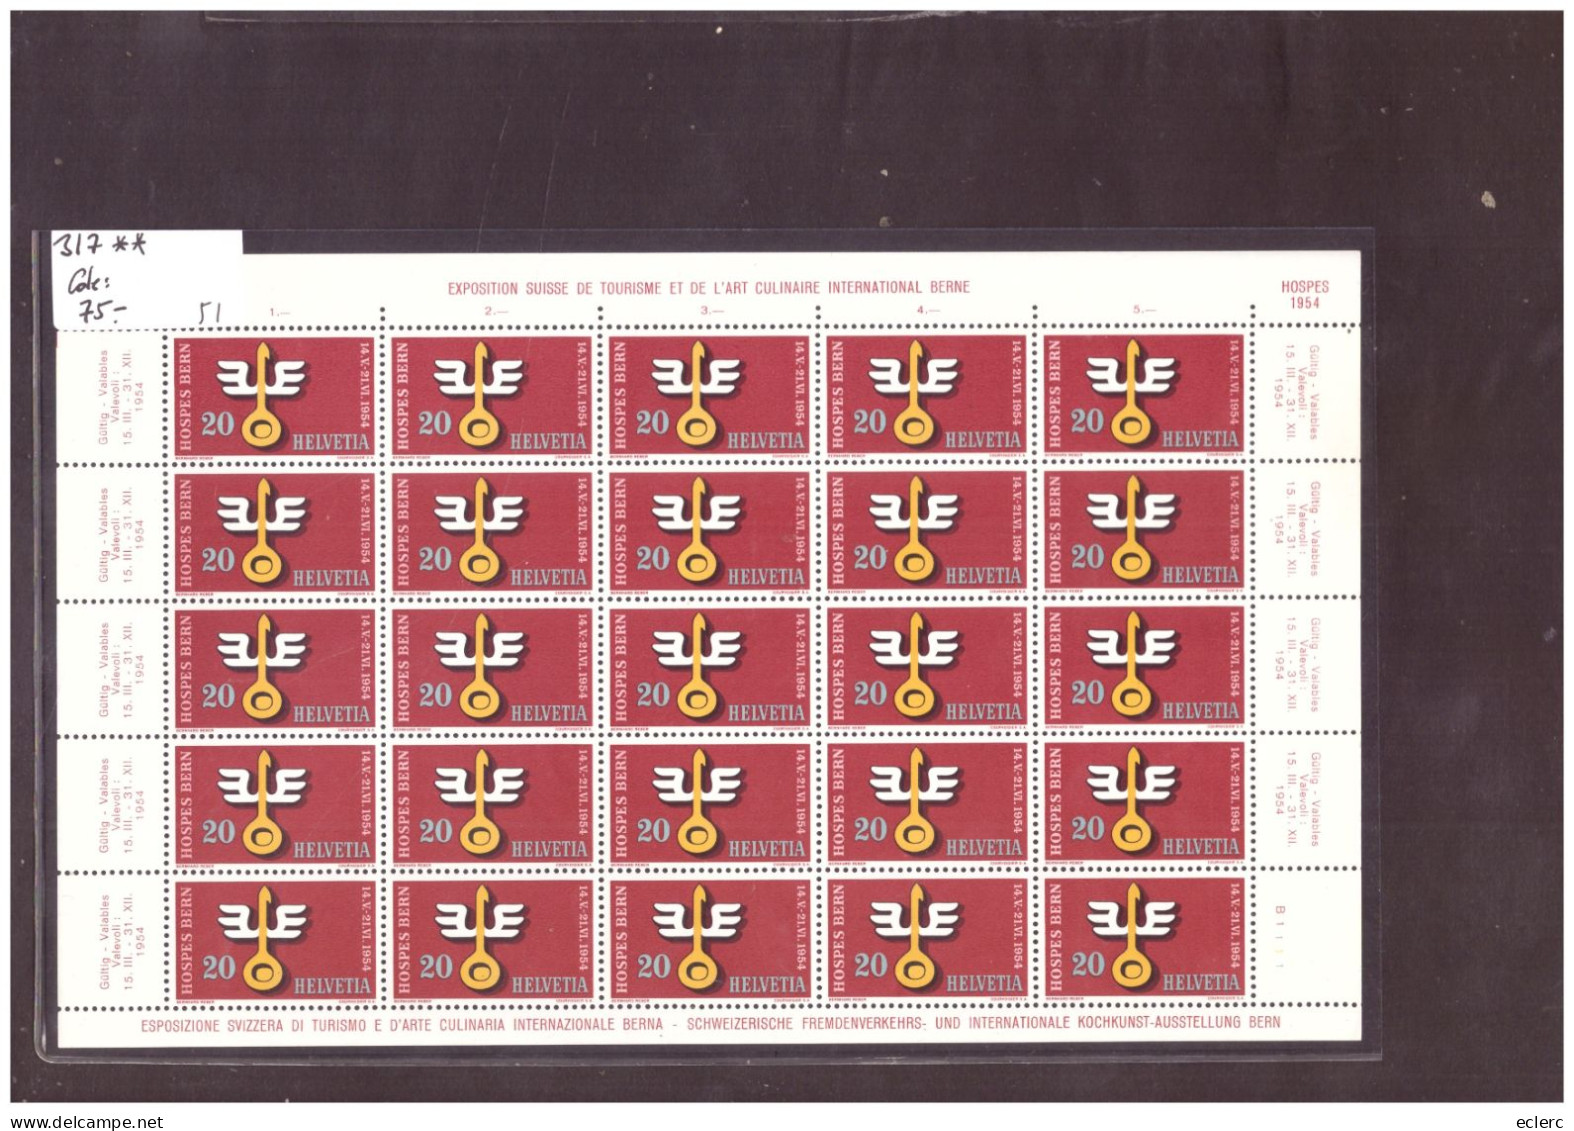 FEUILLE COMPLETE No 317  EN PARFAIT ETAT - HOSPES BERN 1954 - COTE: 75.- - Blocks & Sheetlets & Panes